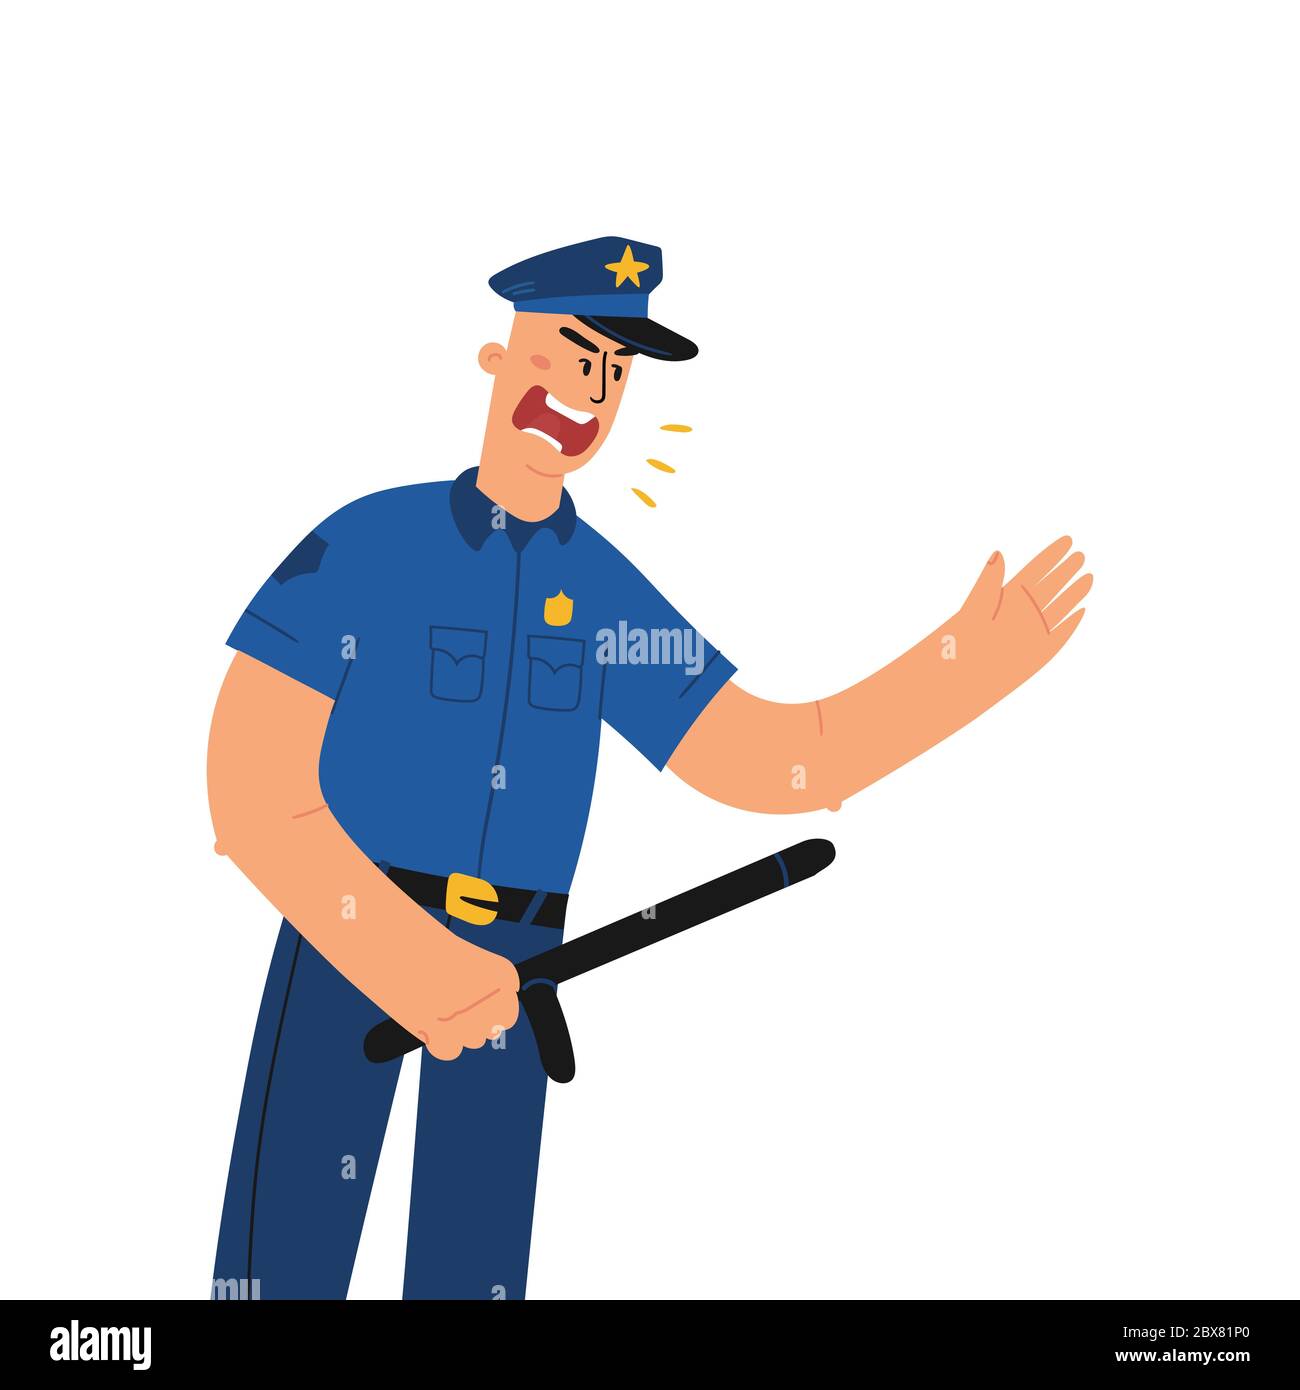 Porra de policia – CreaTuClick